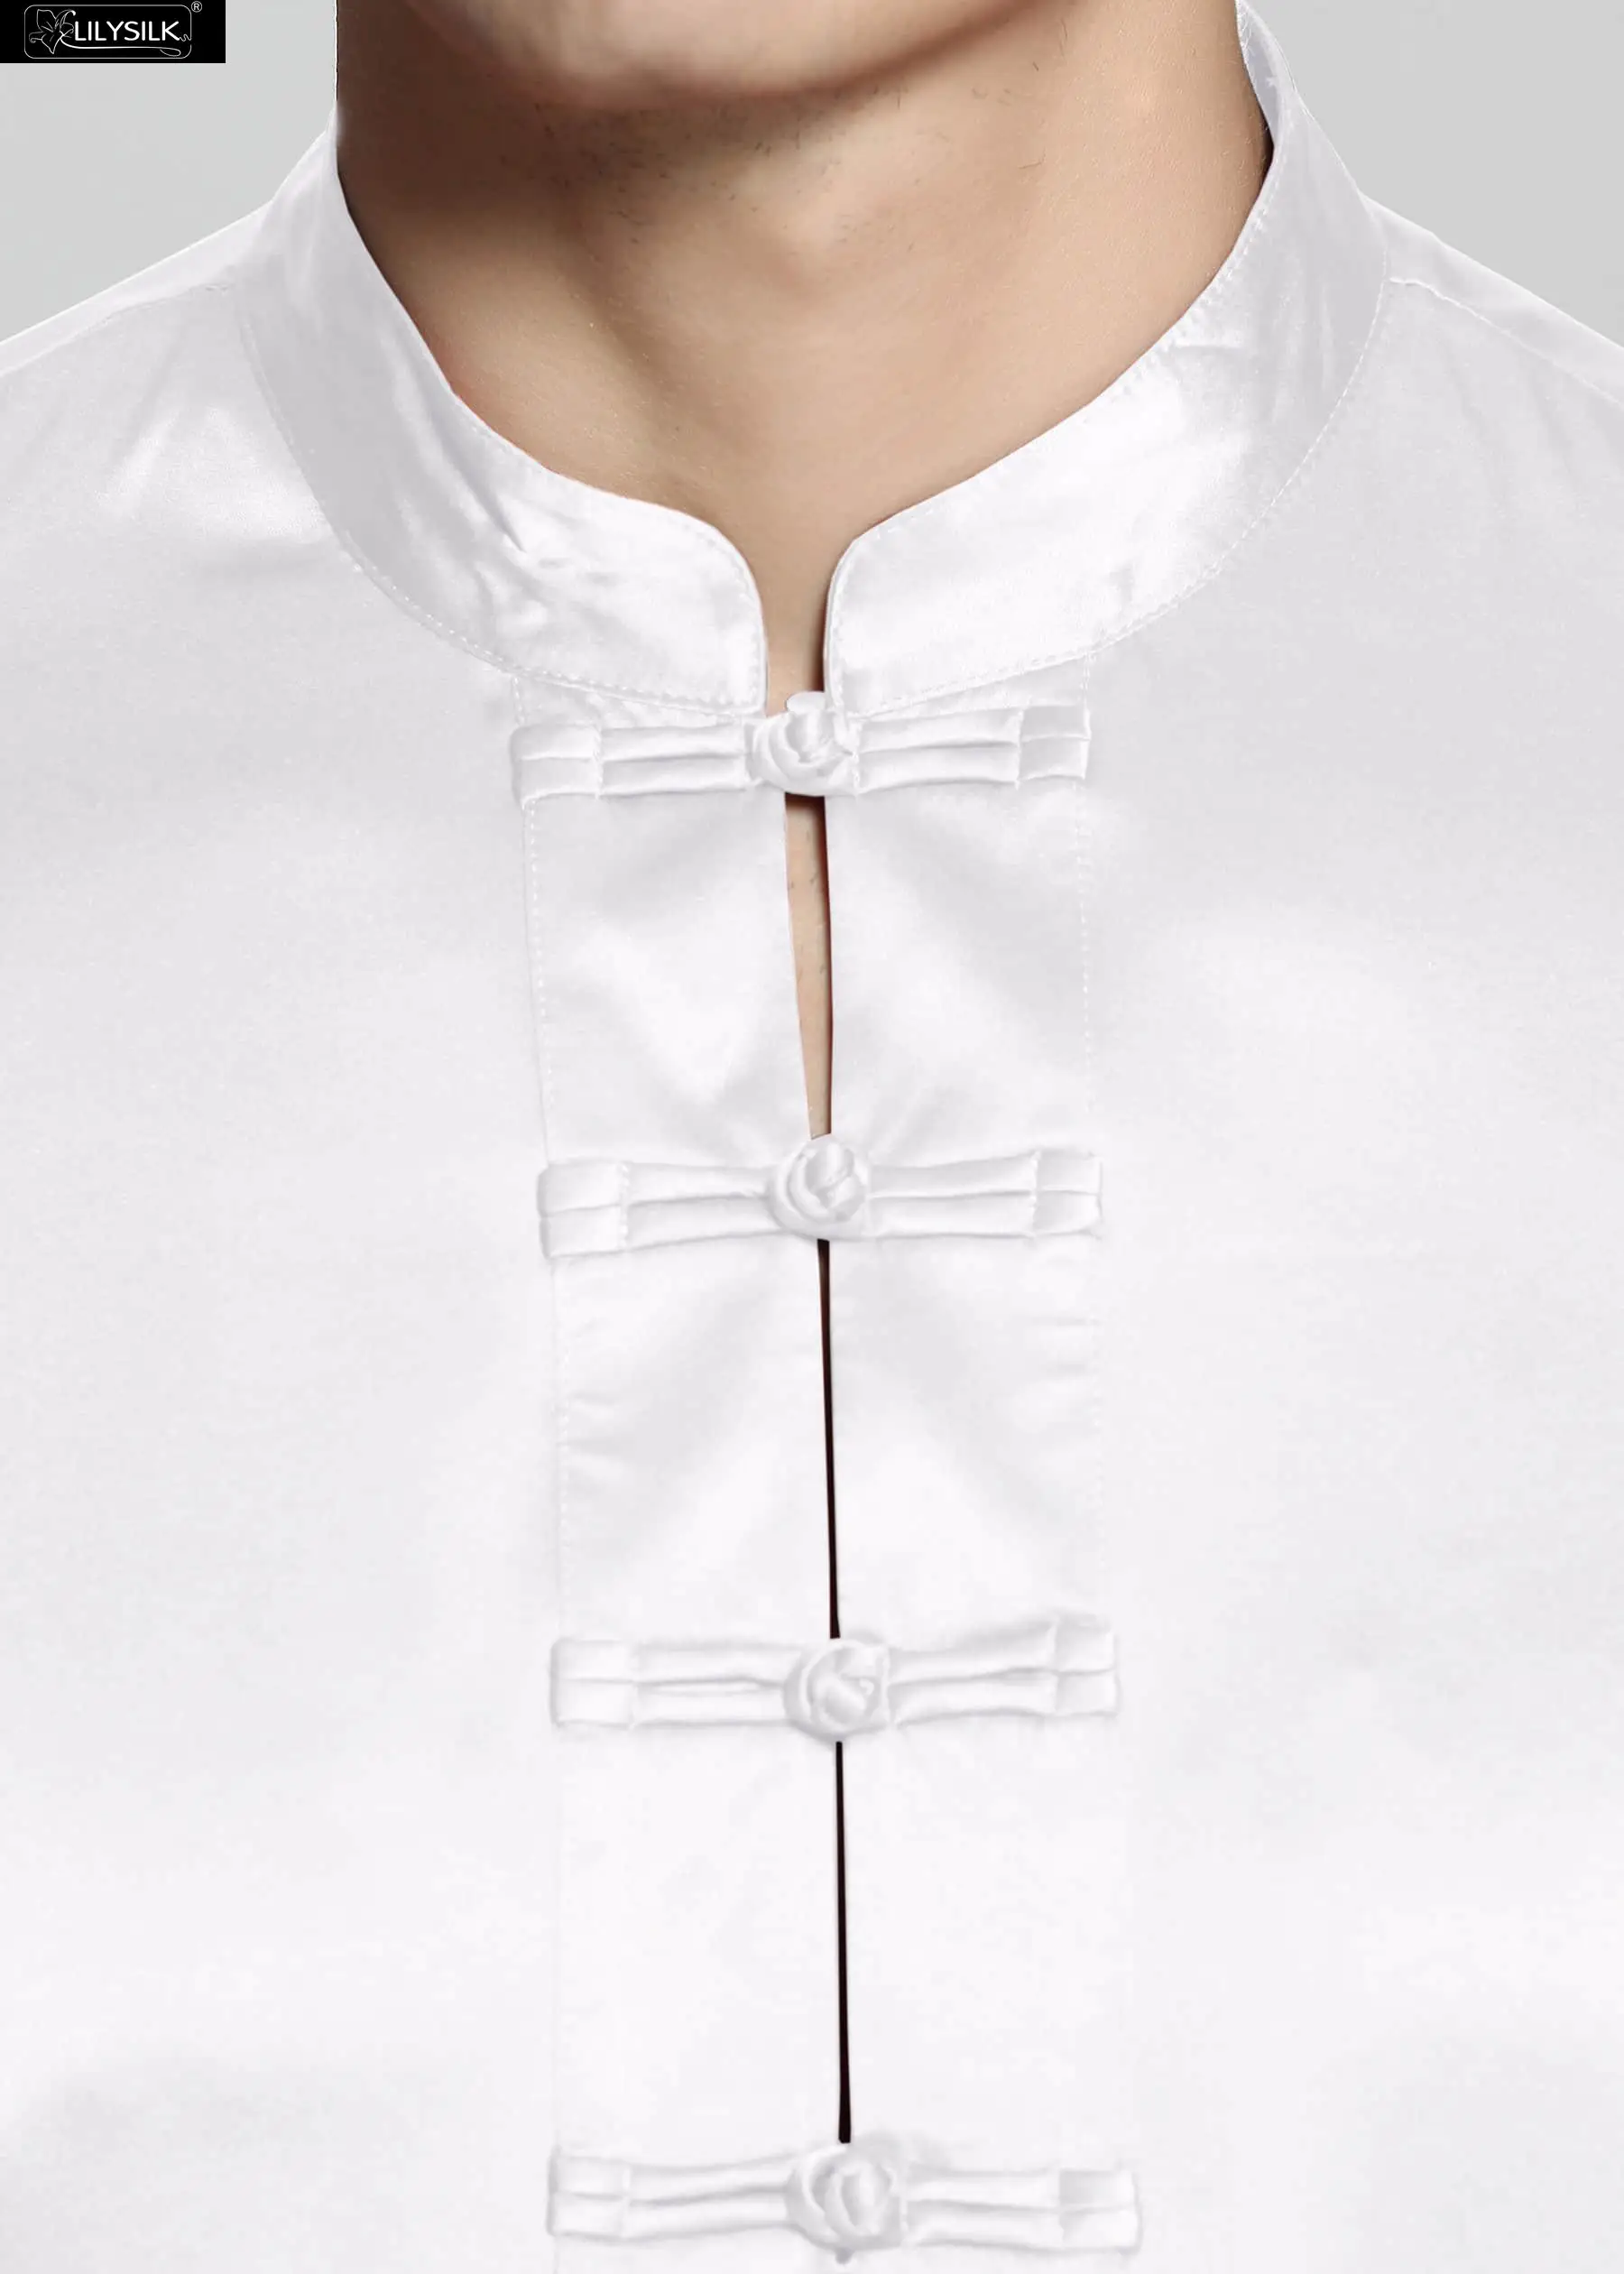 LilySilk пижамный комплект Шелковый Мужской 100 чистый 22 momme роскошный короткий рукав брюки Распродажа